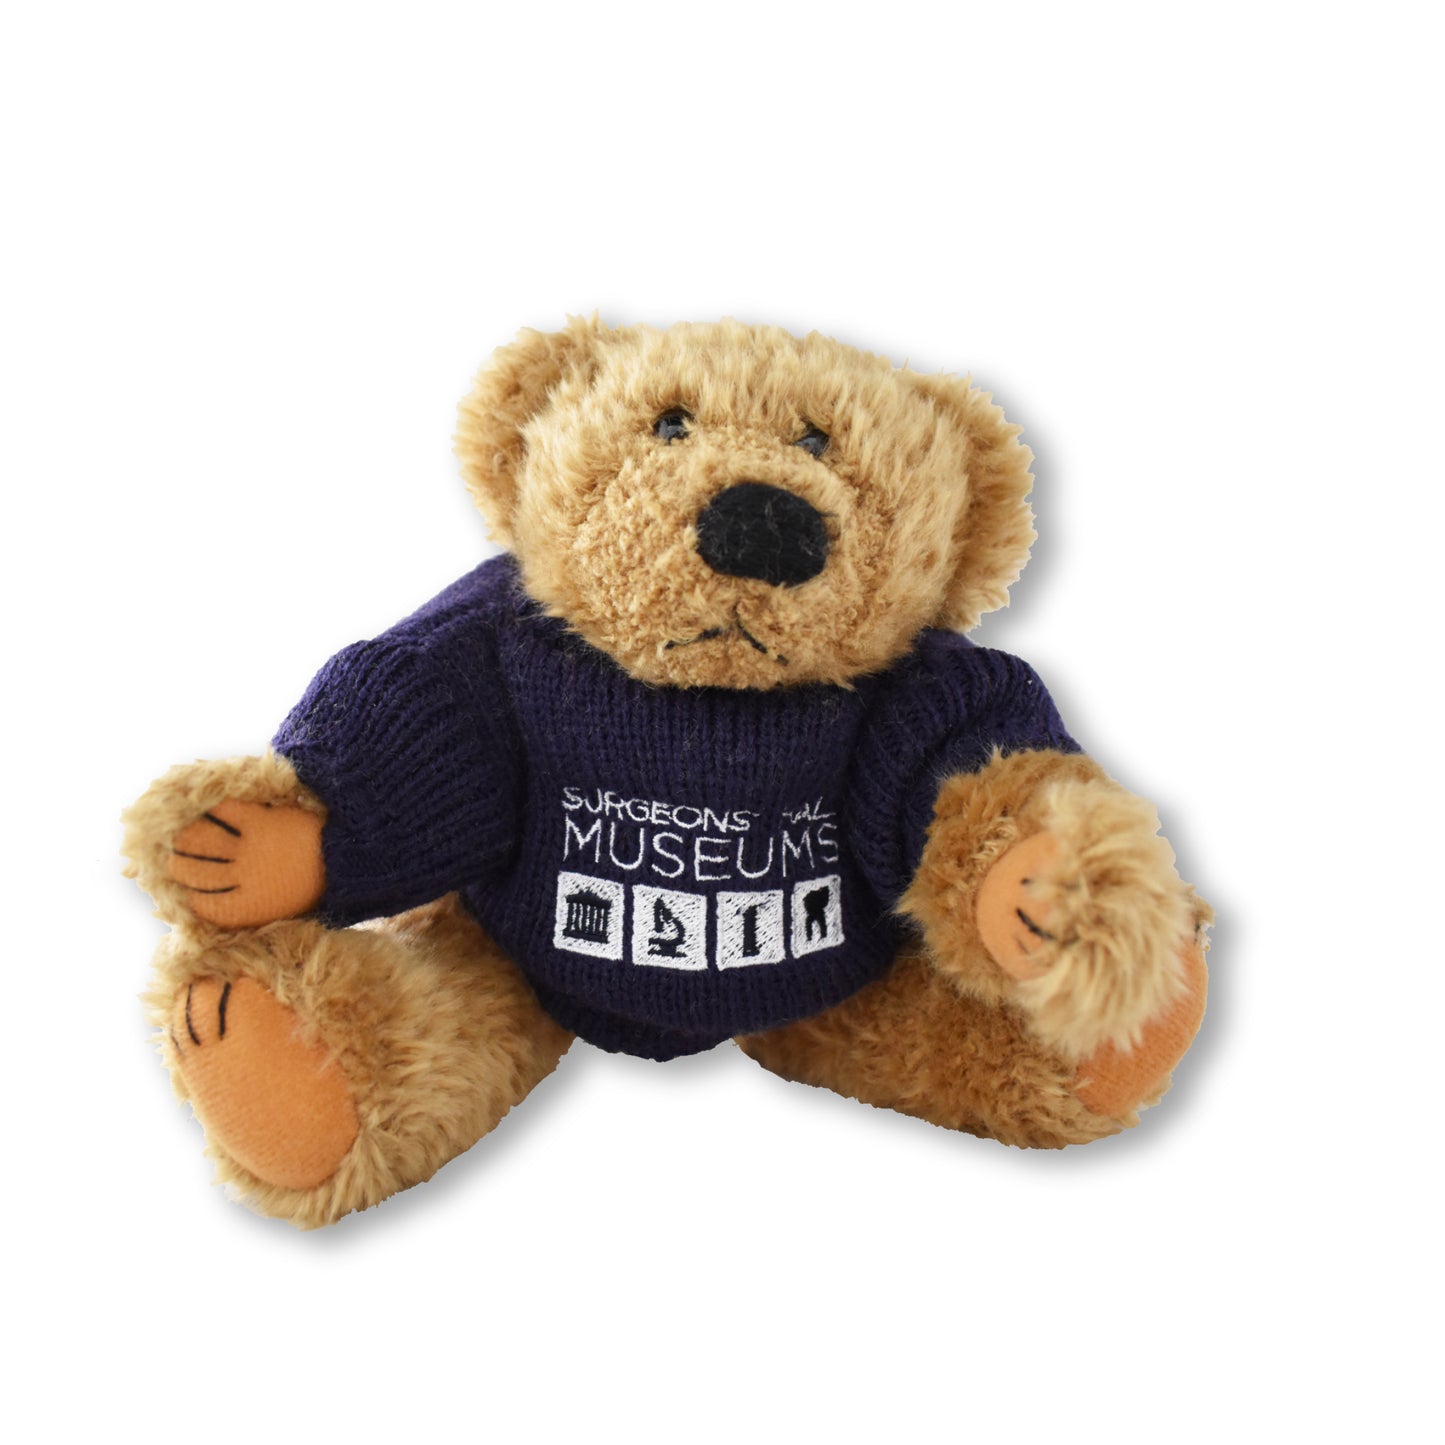 George the Teddy Bear